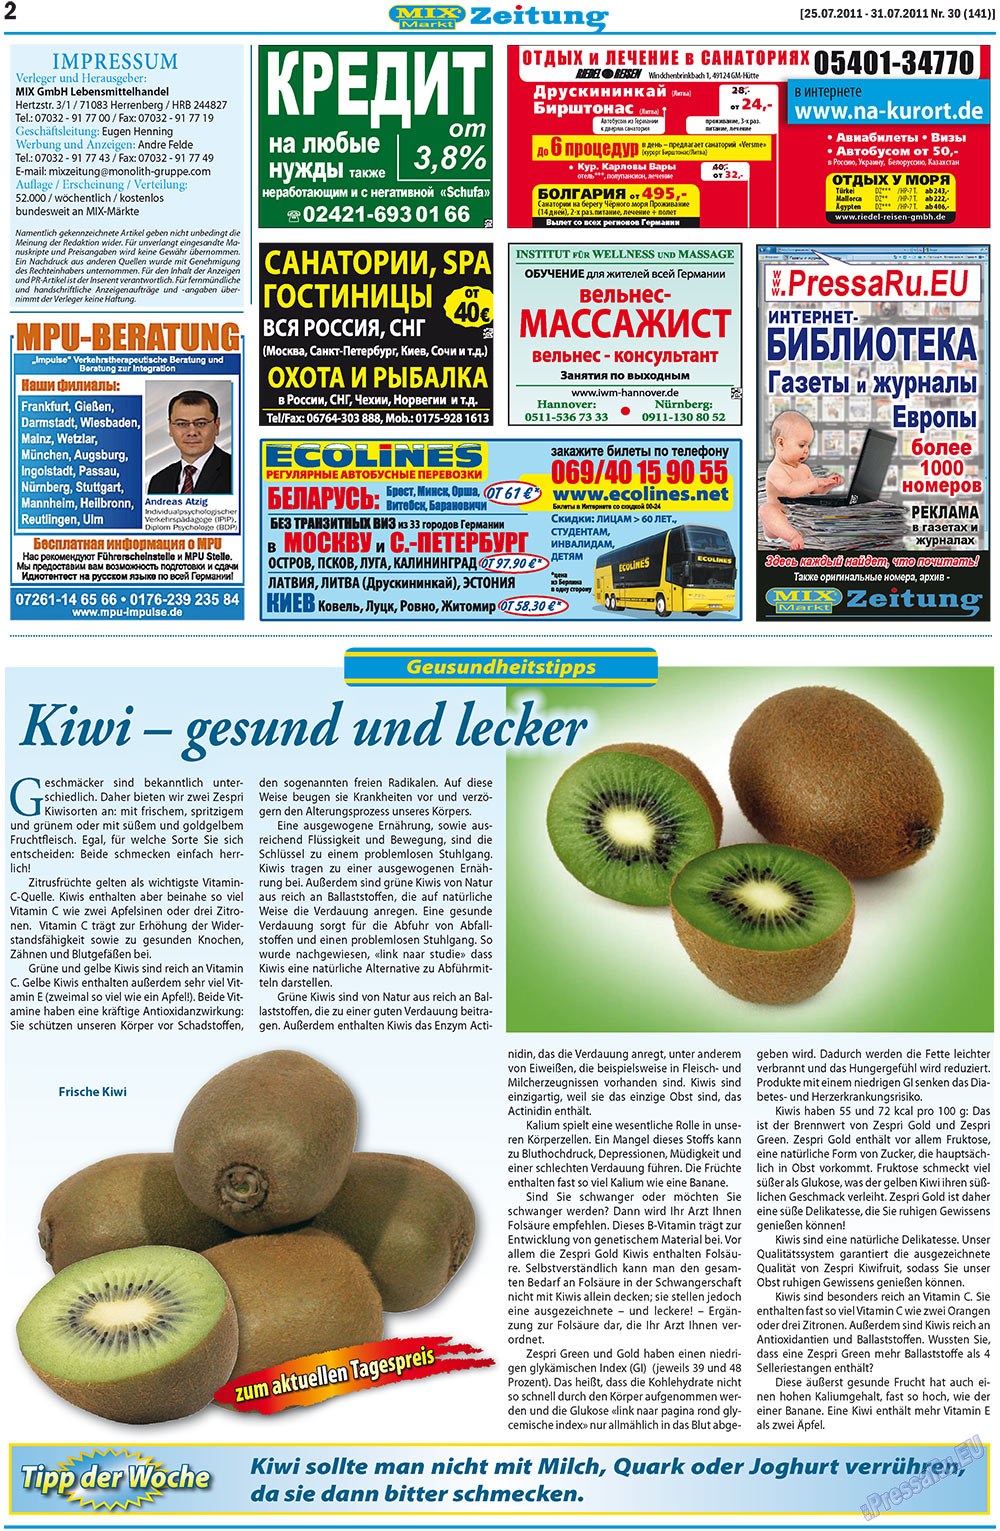 MIX-Markt Zeitung, газета. 2011 №30 стр.2